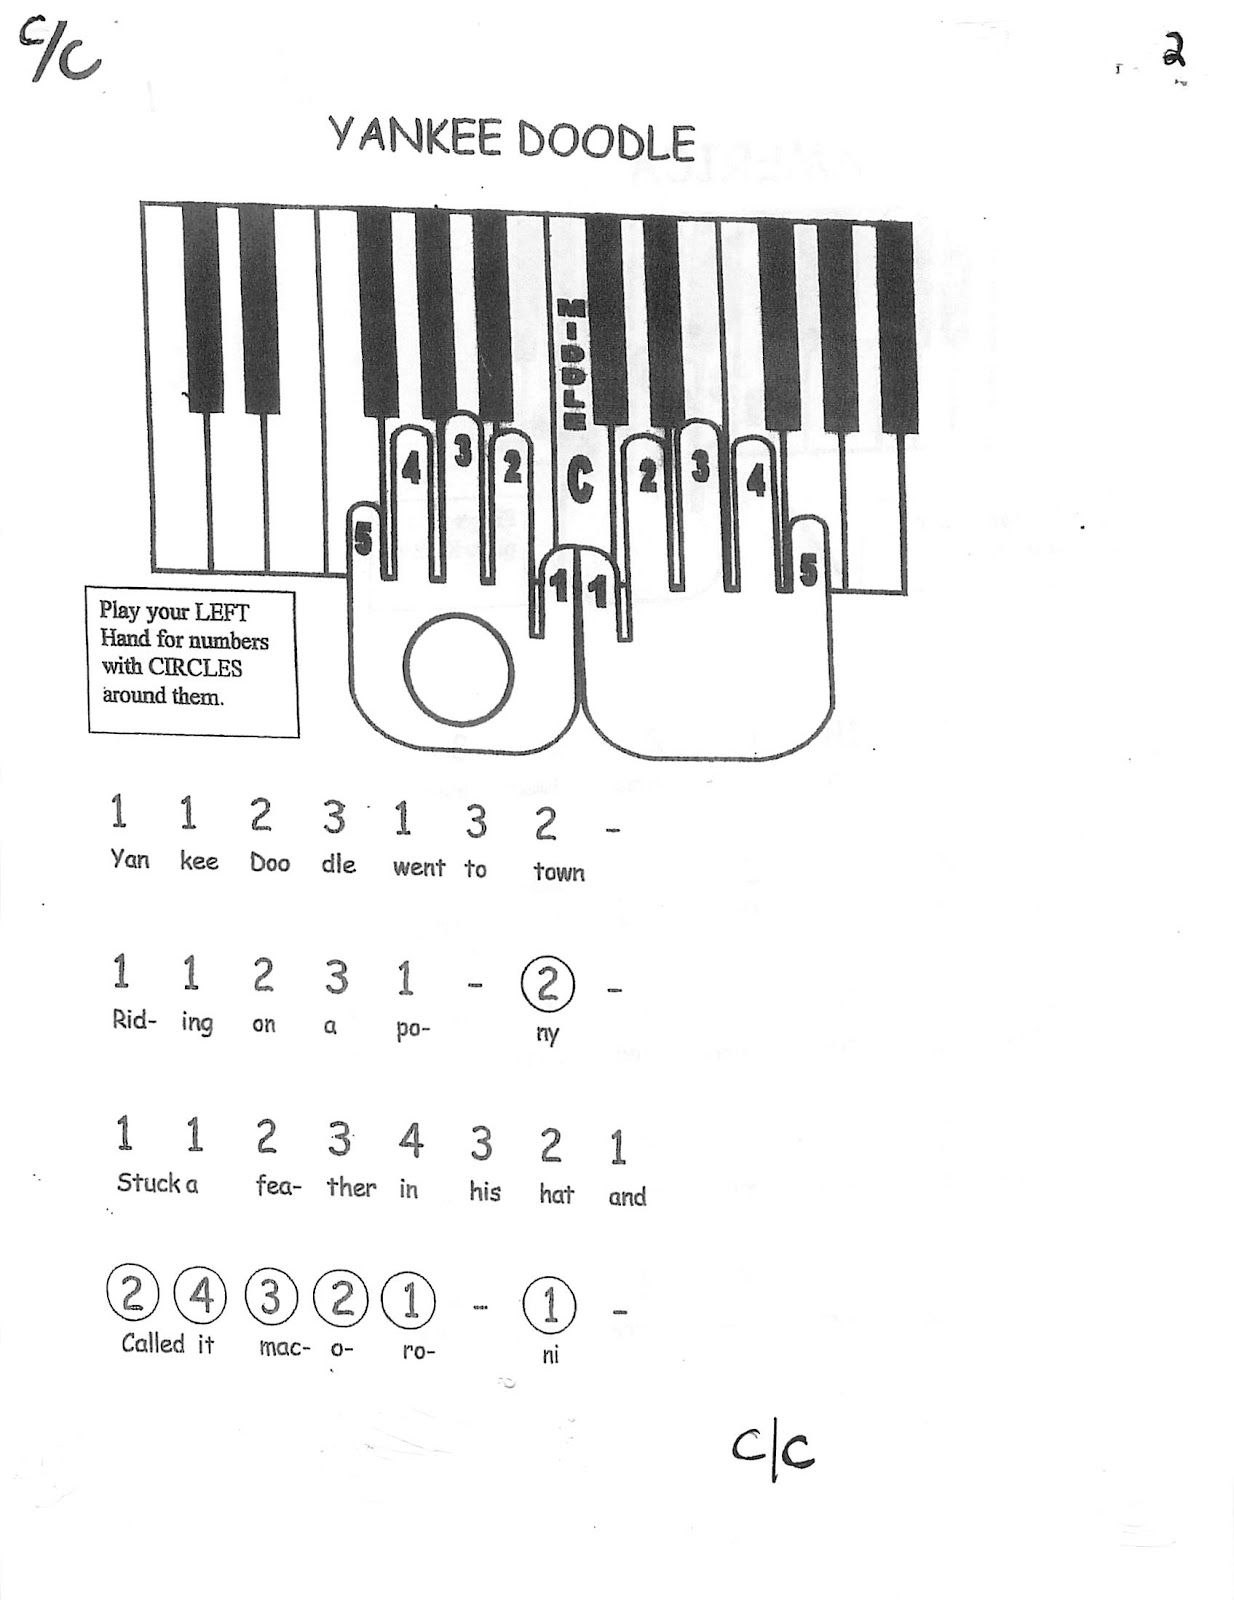 Легкое на пианино по клавишам. Схема клавиш синтезатора по цифрам.